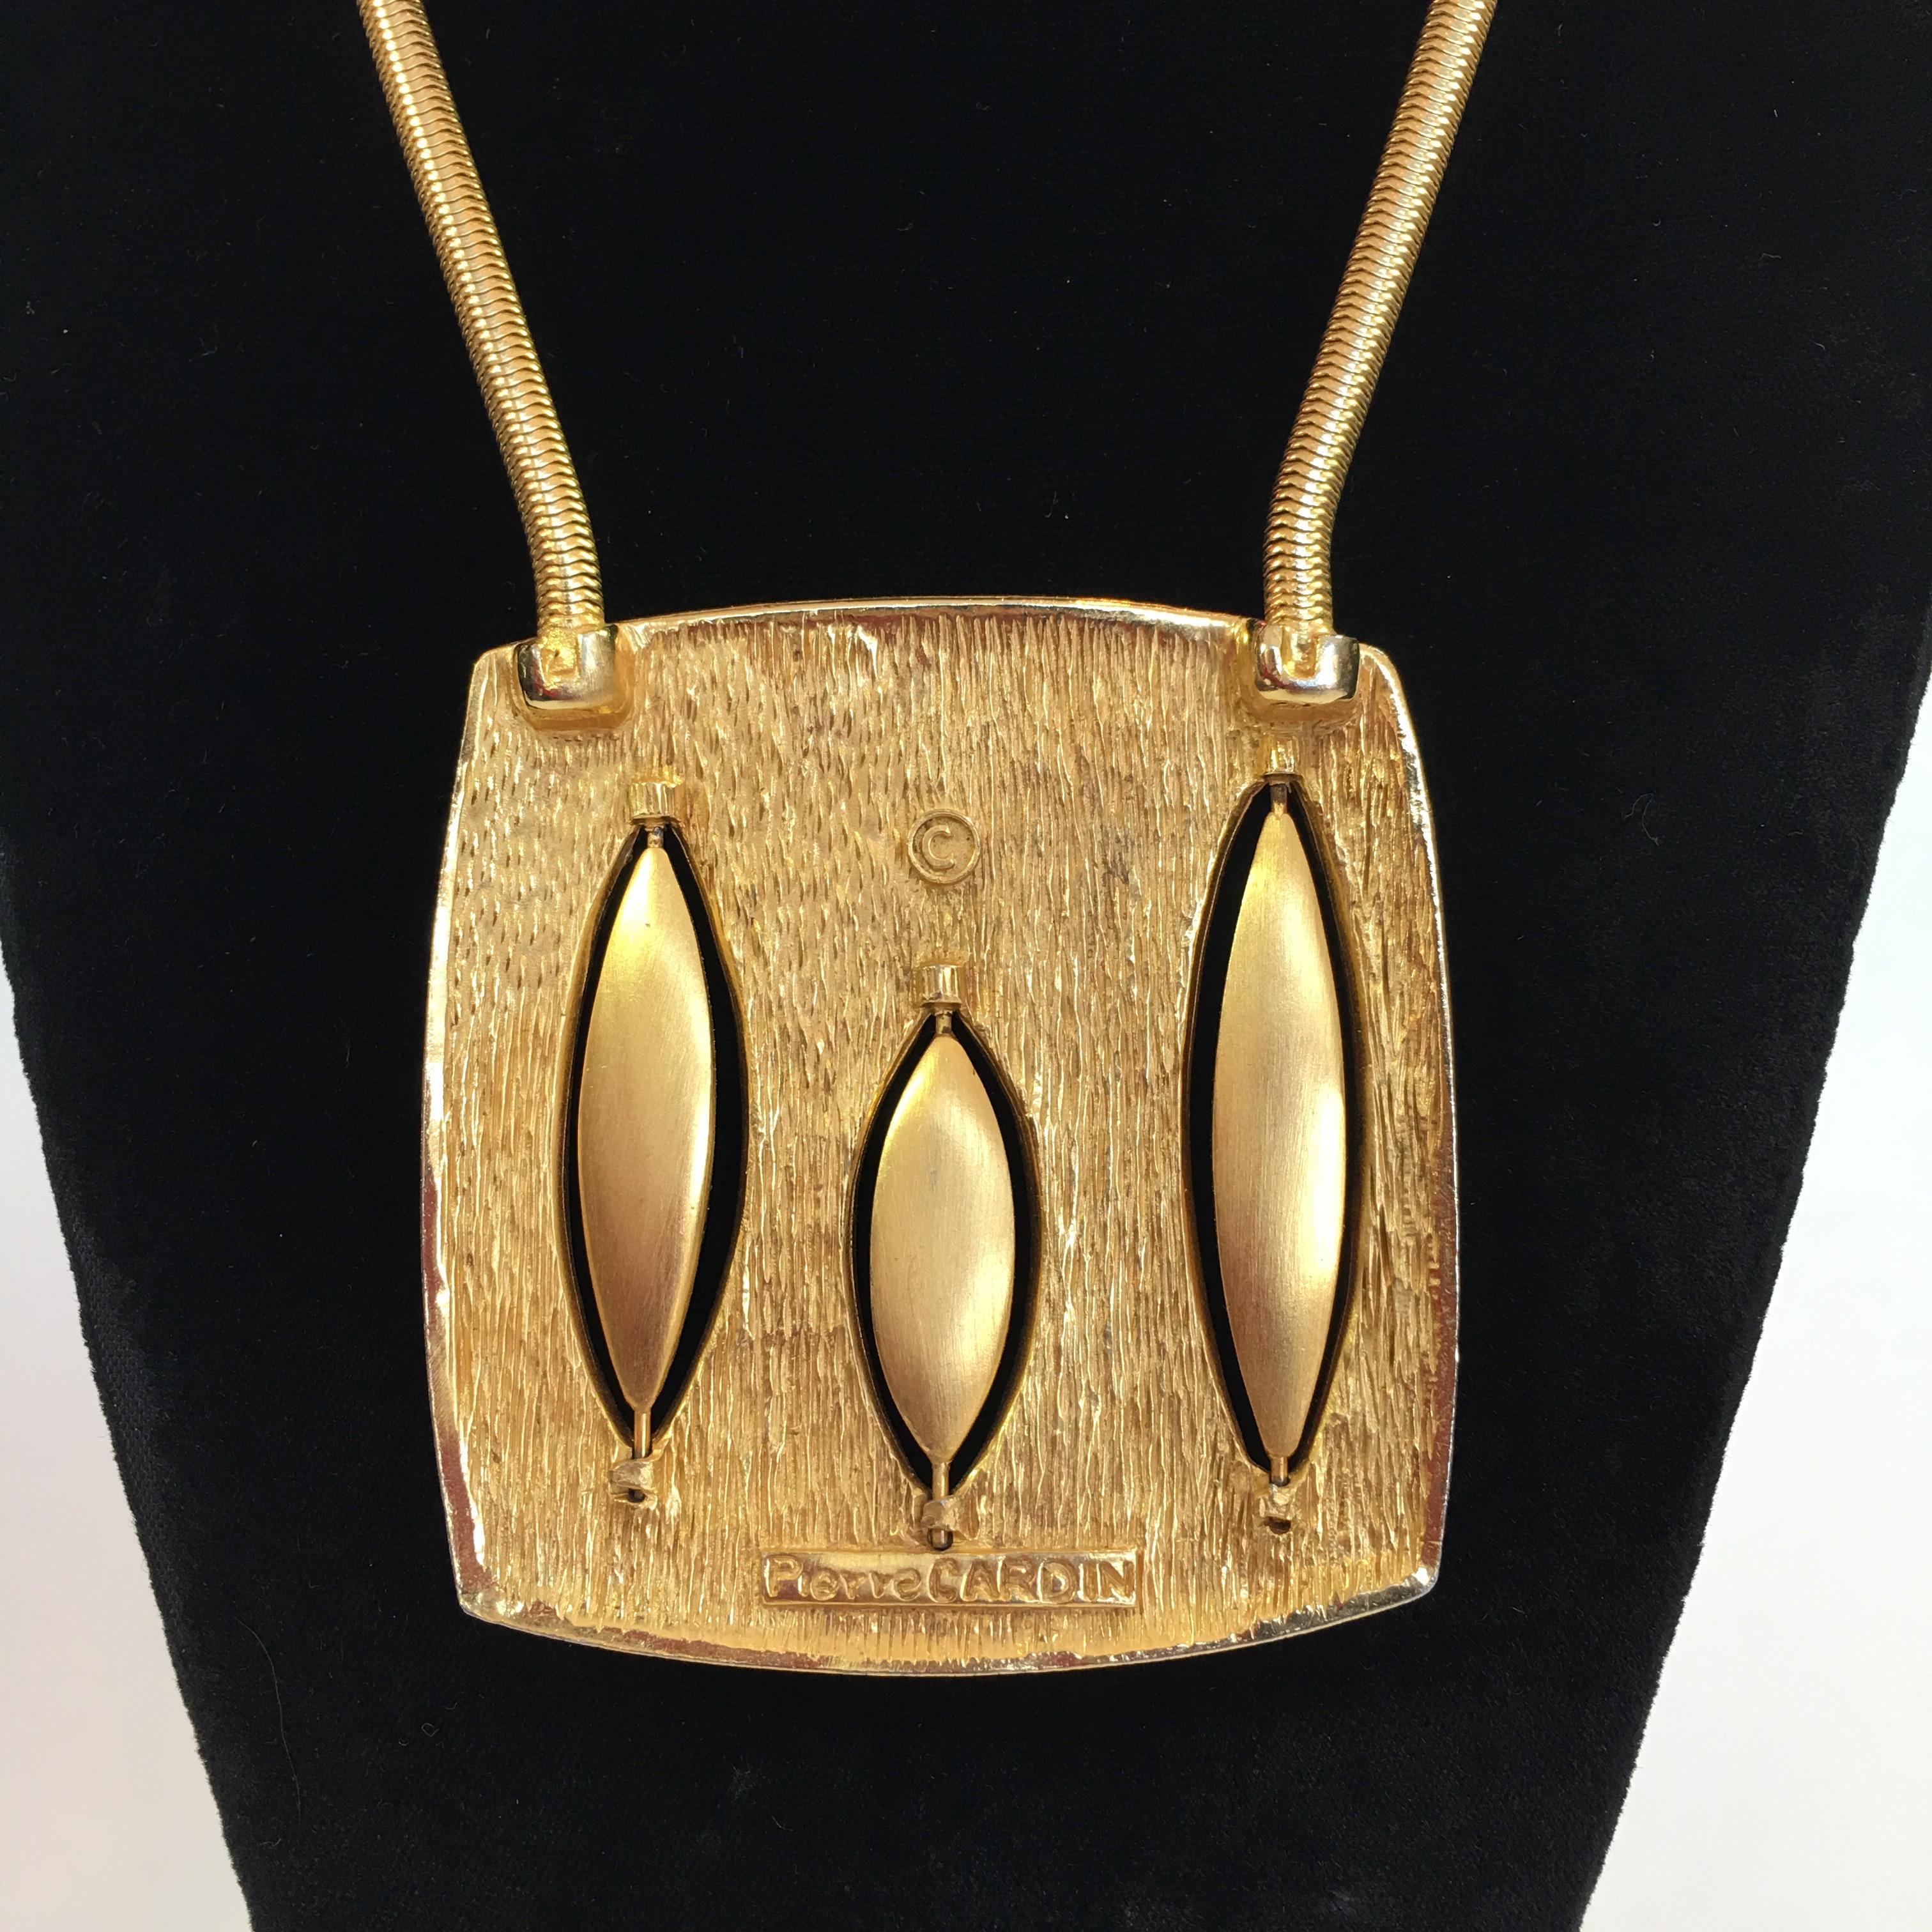 Pierre Cardin Mid-Century Modern Gold Tone + Emaille Halskette aus den 1960er Jahren. Flache Schlangenkette, die mit jeder Seite des Anhängers verbunden ist. Individueller Cardin-Verschluss im Nacken. 
Die Halskette ist in sehr gutem Zustand.

Die